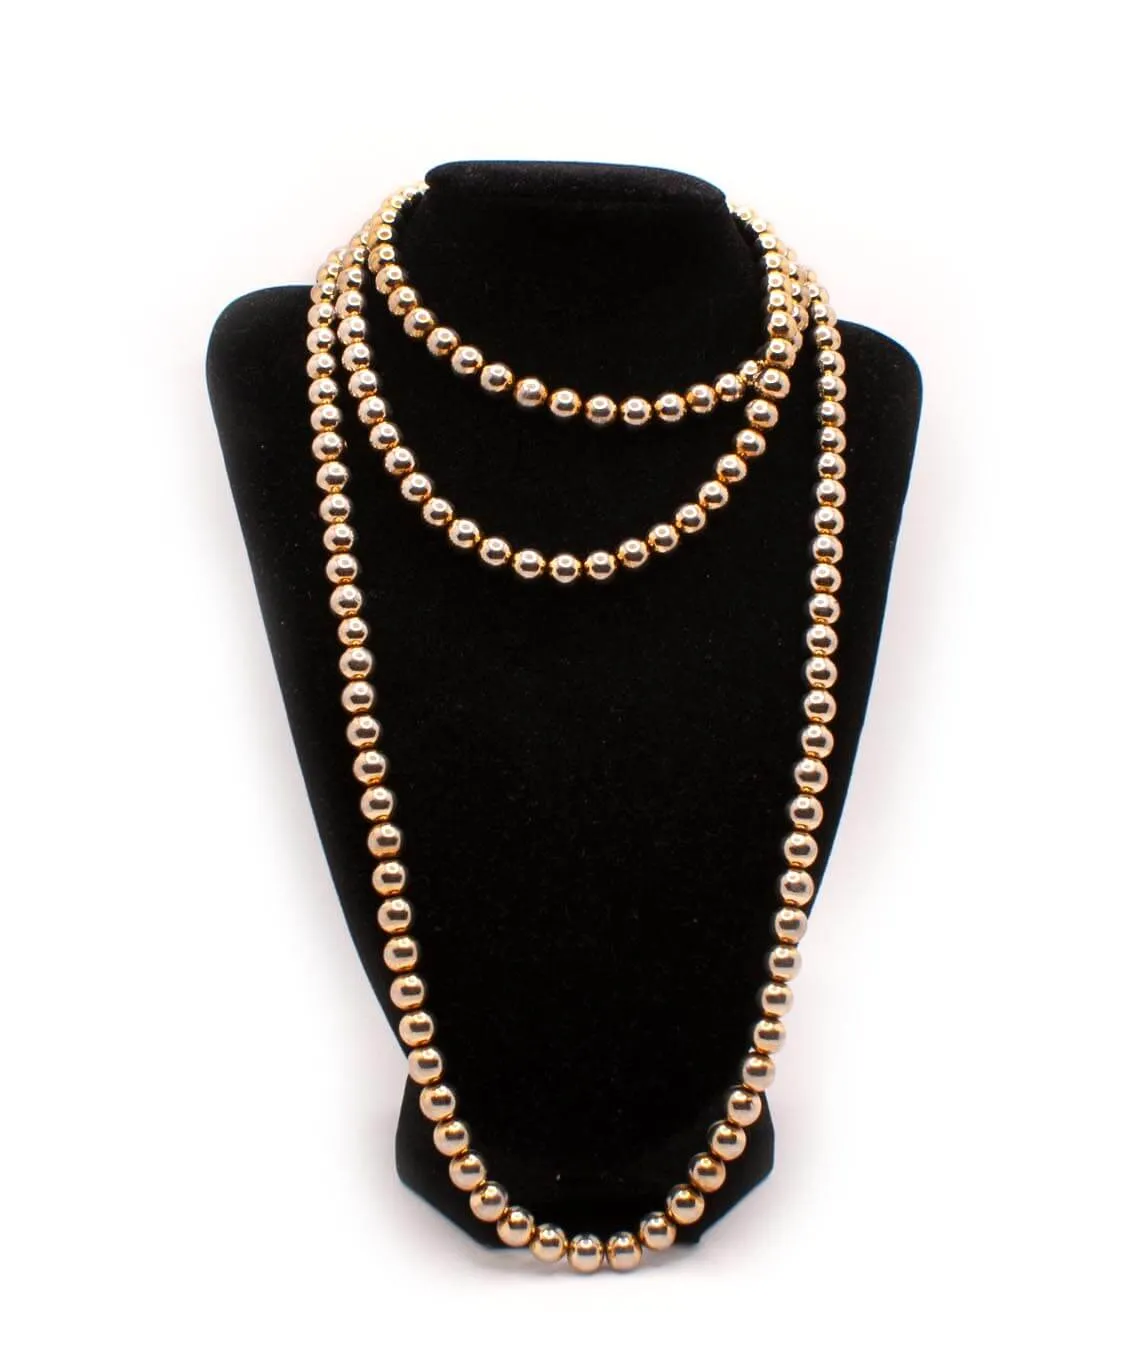 Vintage Kramer gold-coloured bead necklace wrapped